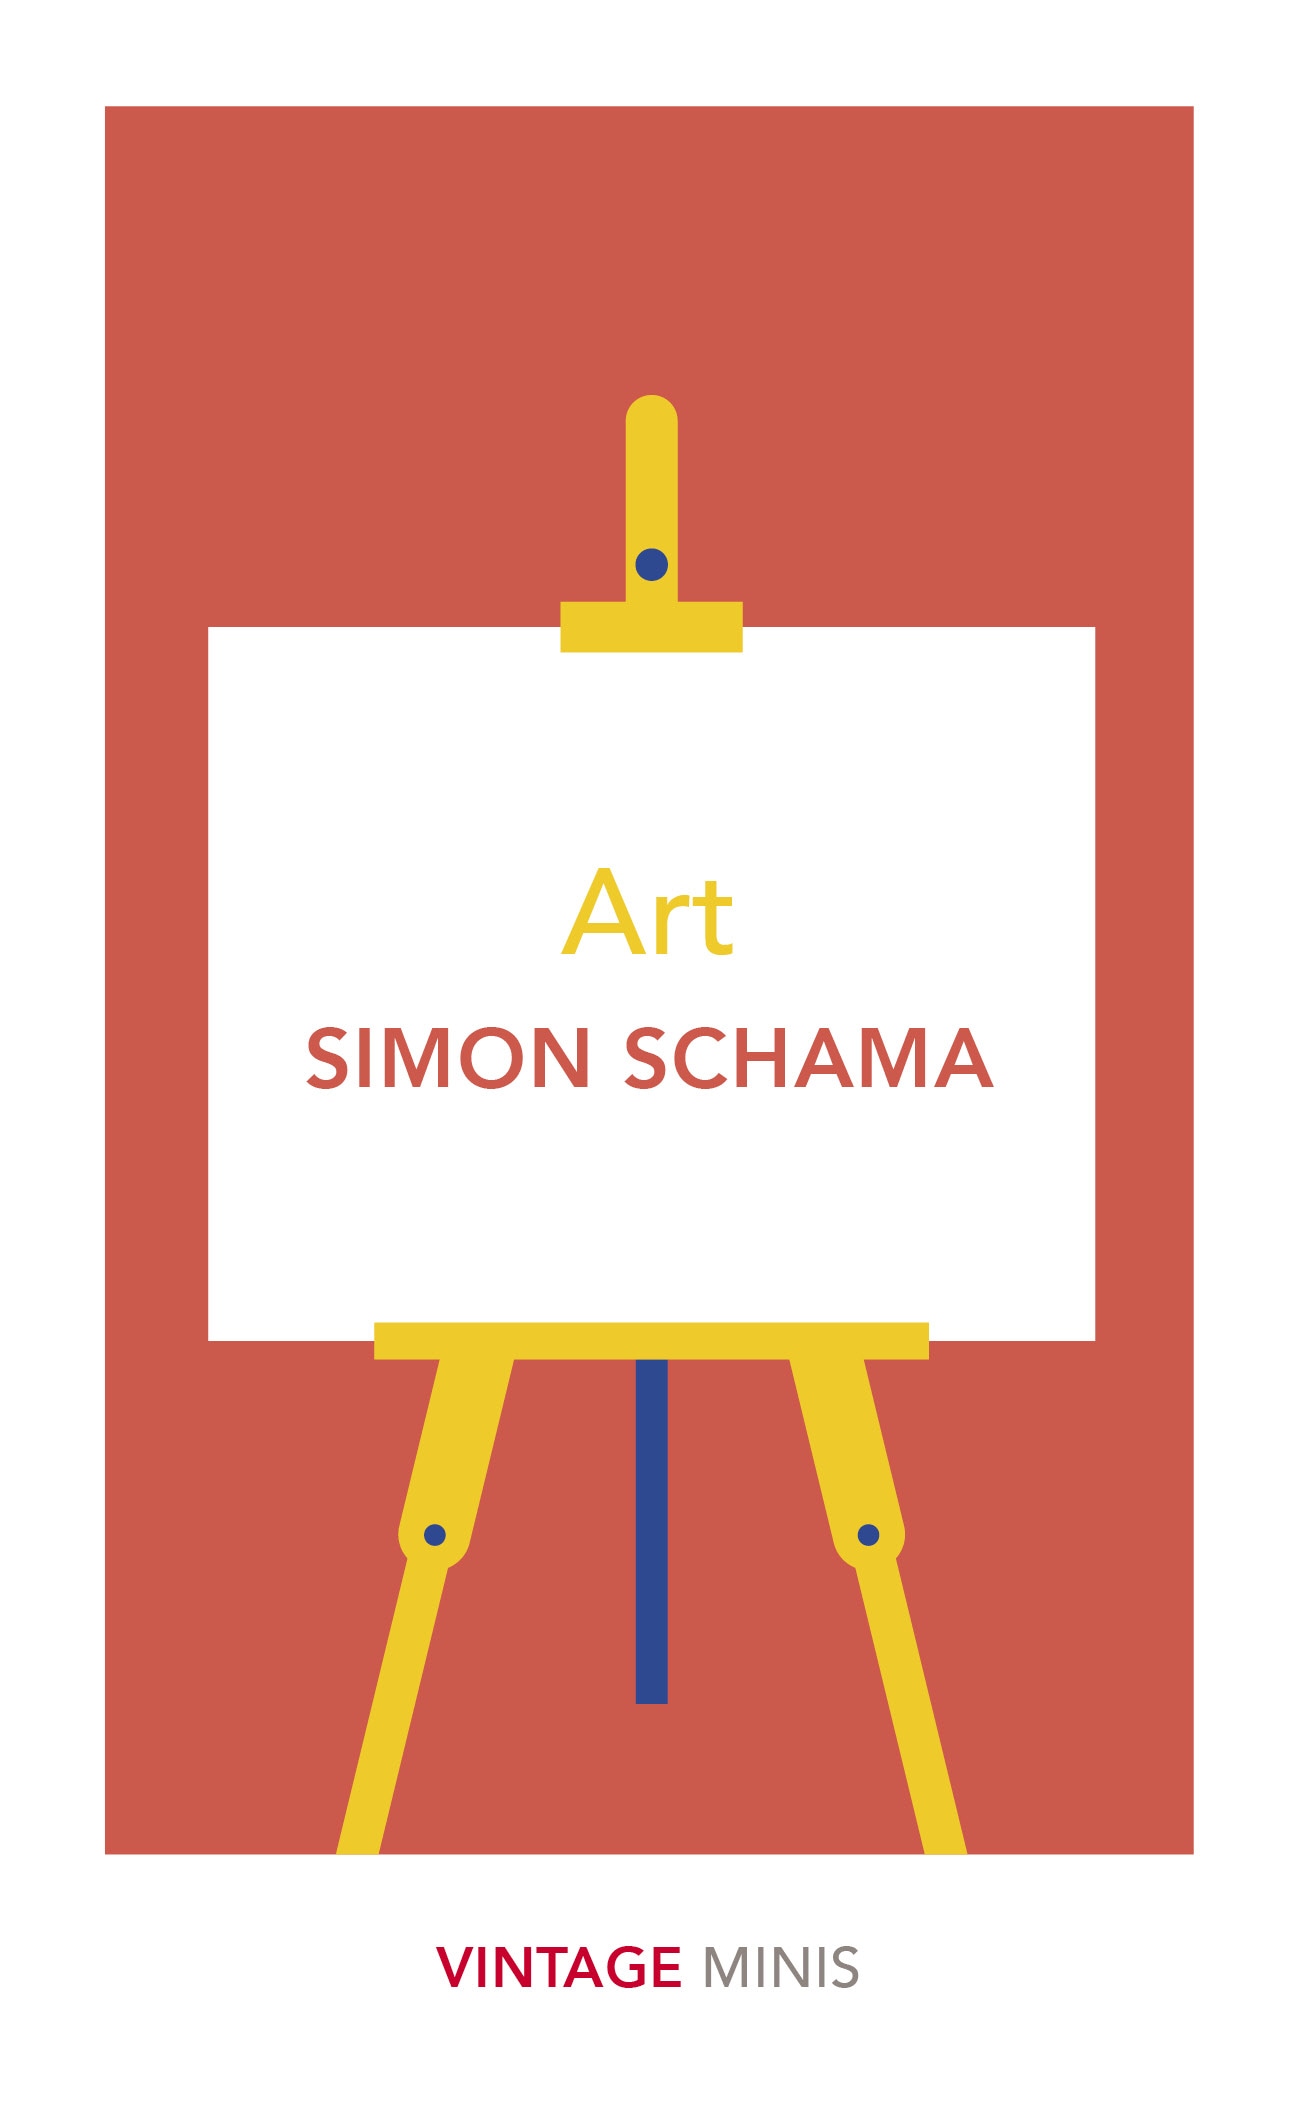 Book “Art” by Simon Schama — October 3, 2019